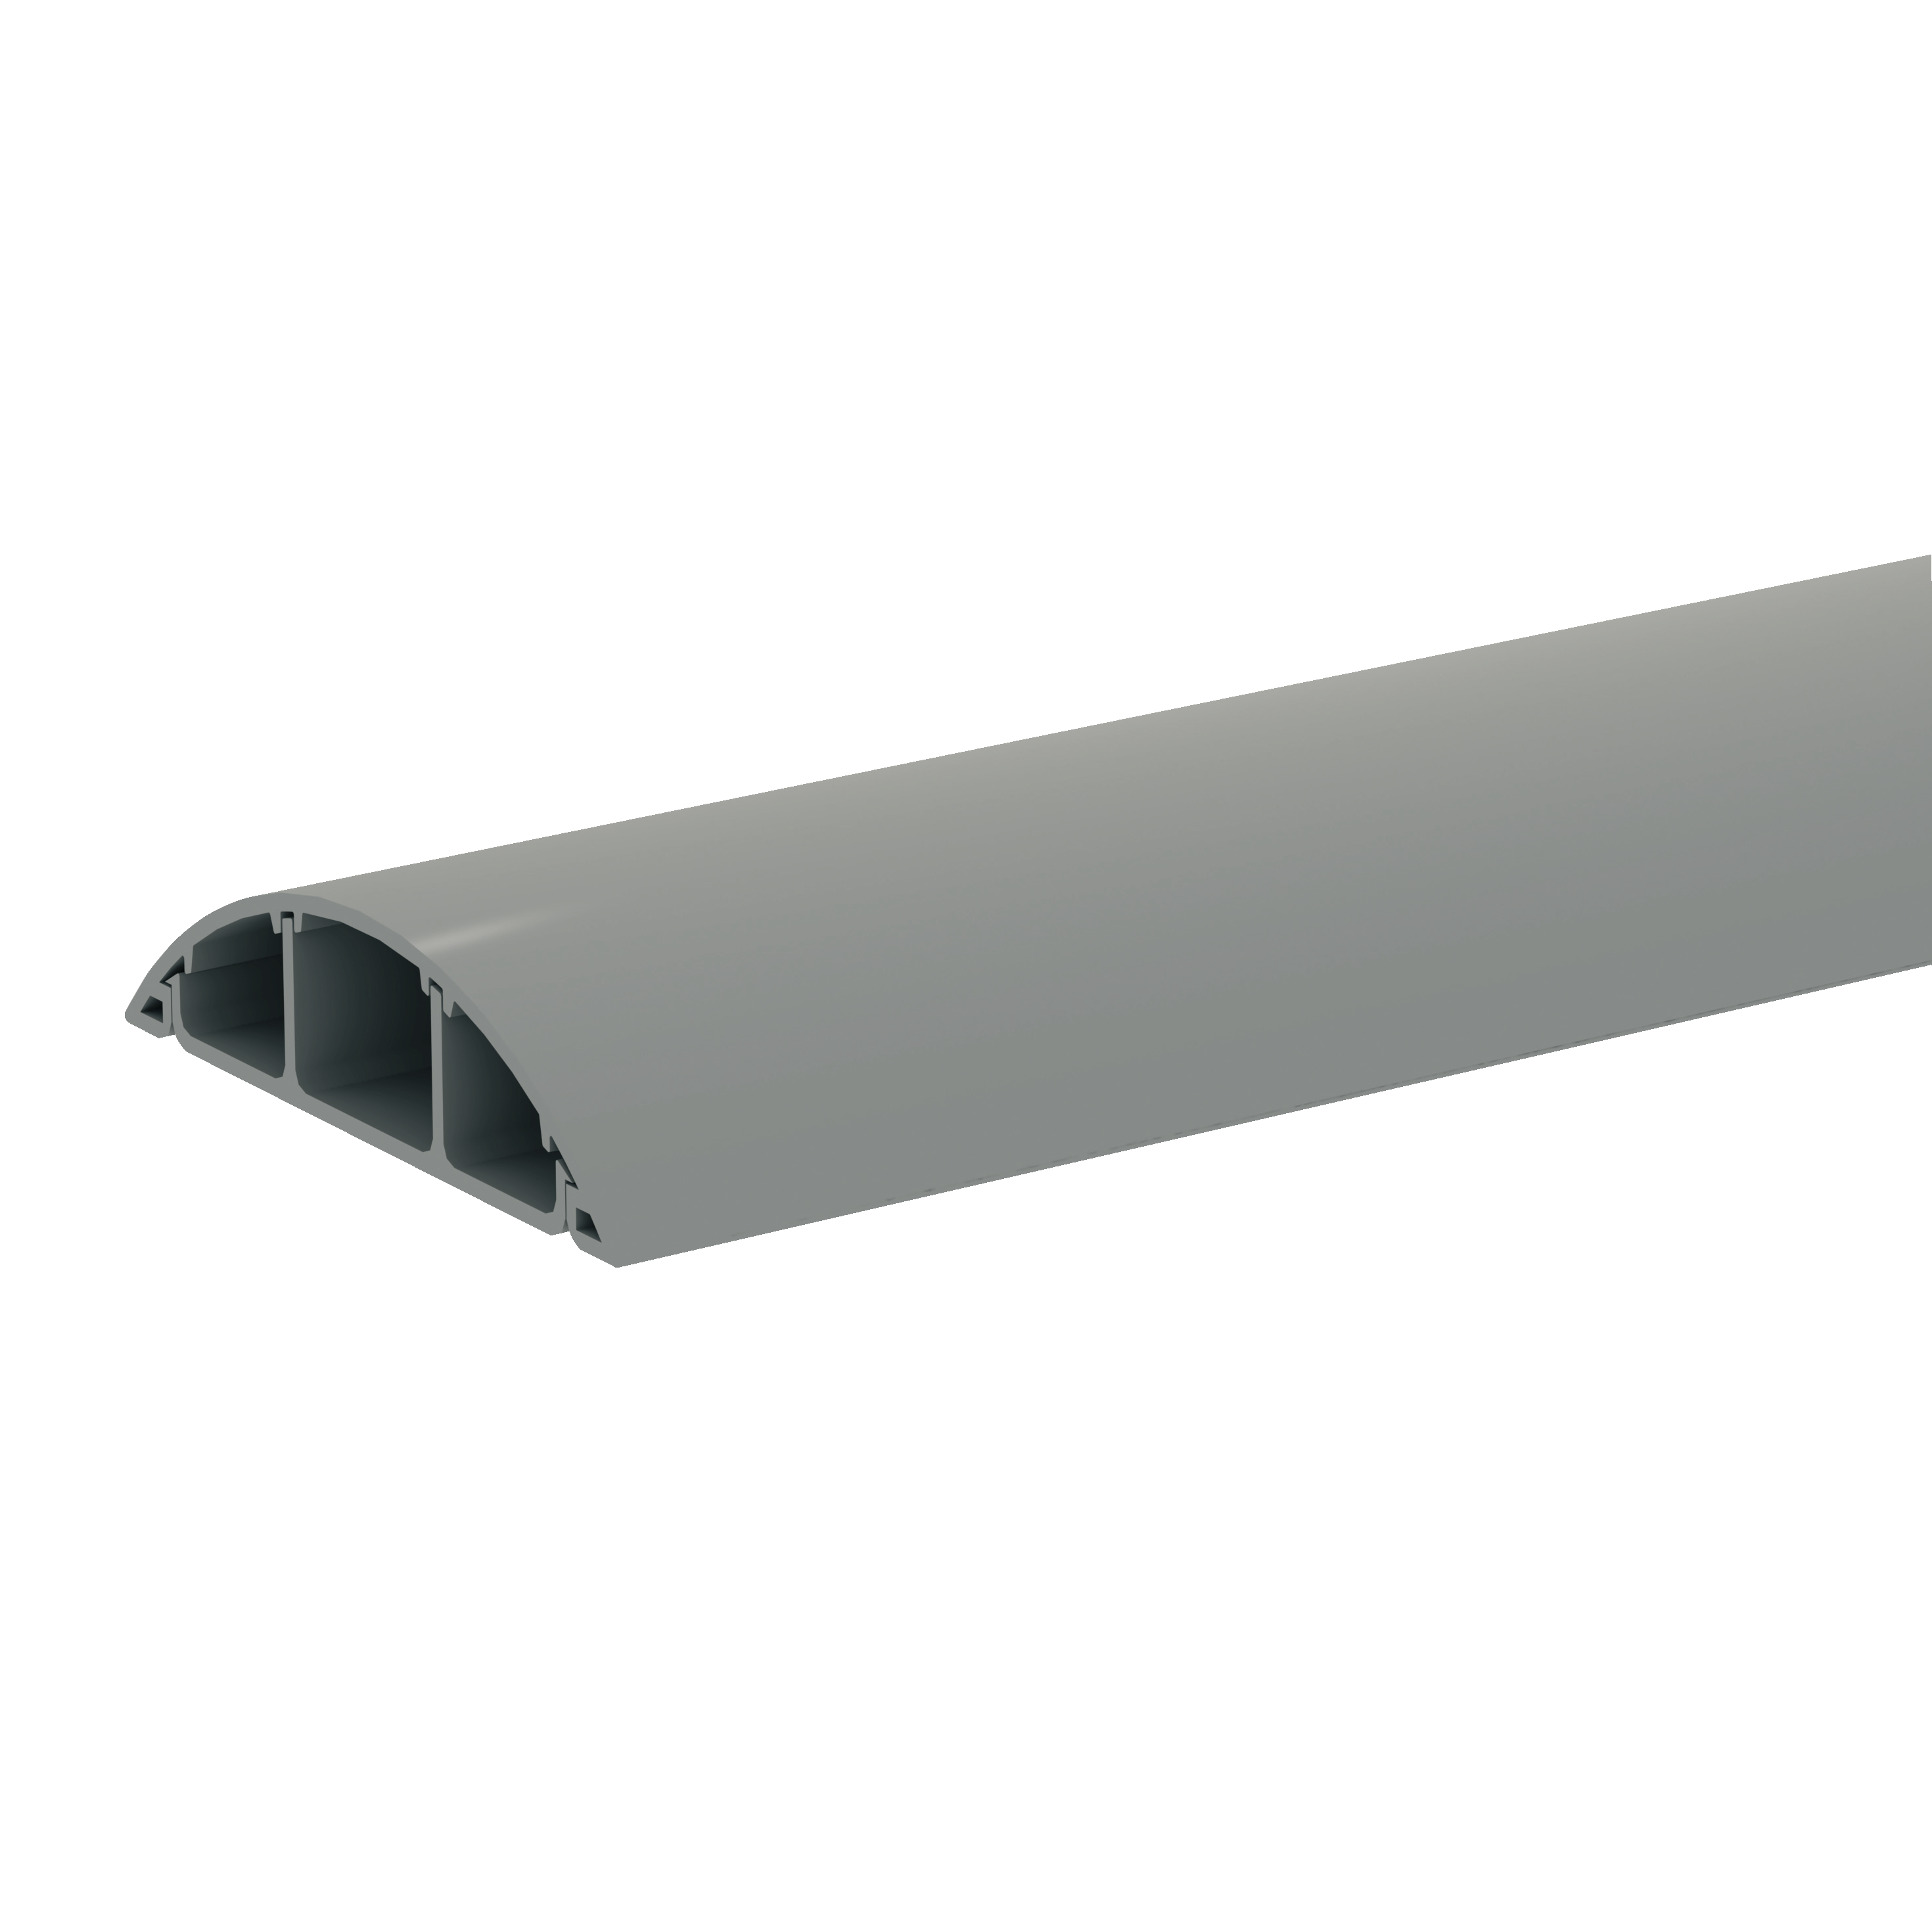 OPTILINE: plasticni kanal za razvod po podu, trodelni, 75x18mm, sivi, 2m